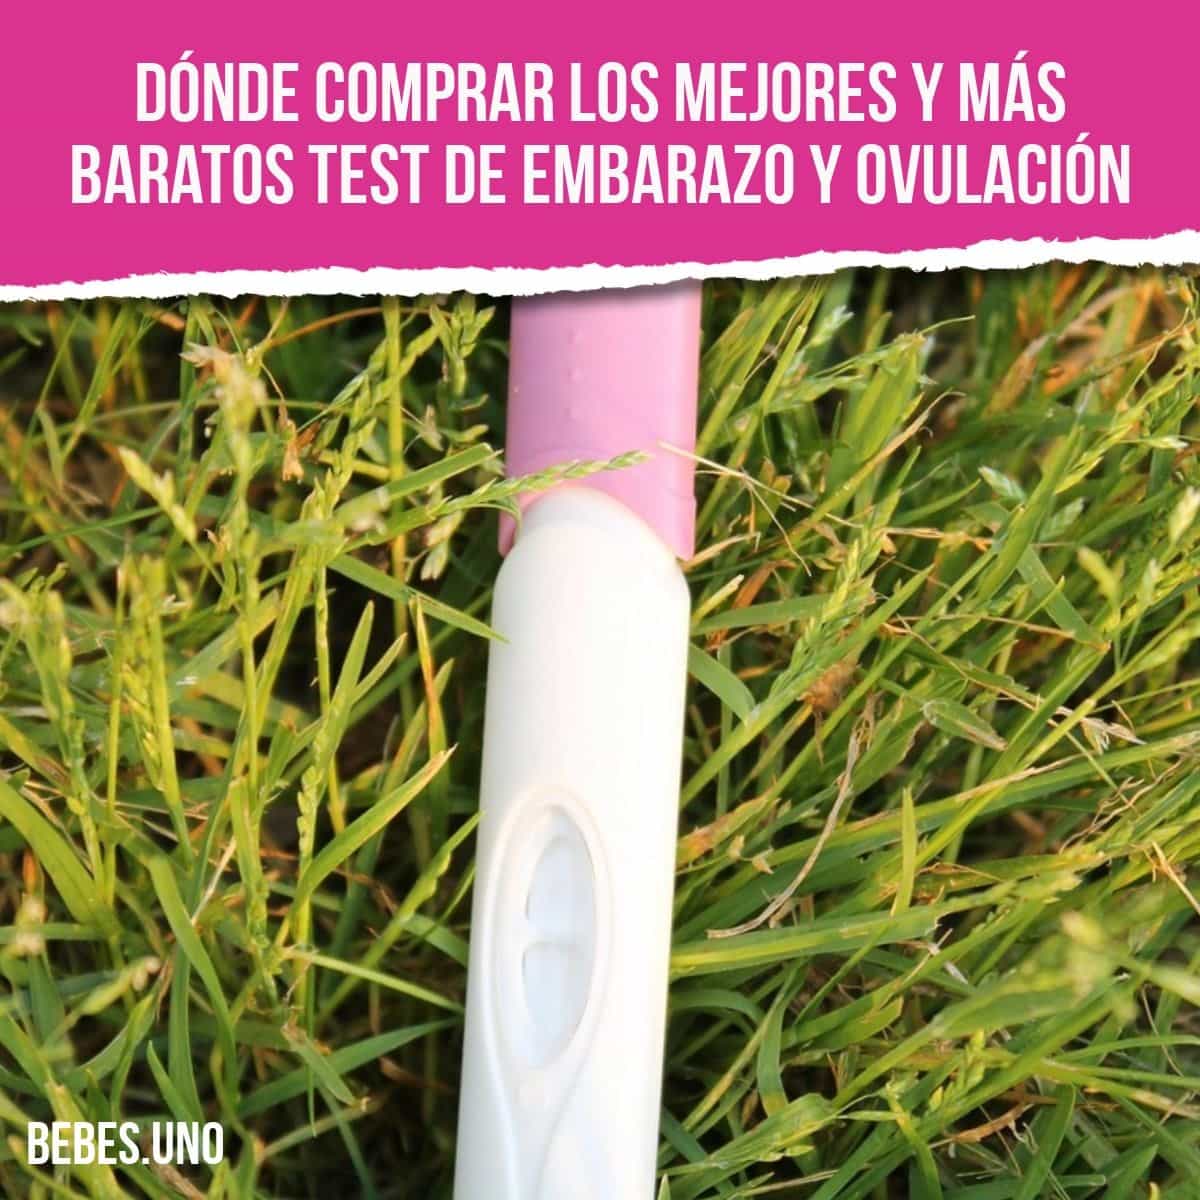 Dónde comprar los mejores y más baratos test de embarazo y ovulación